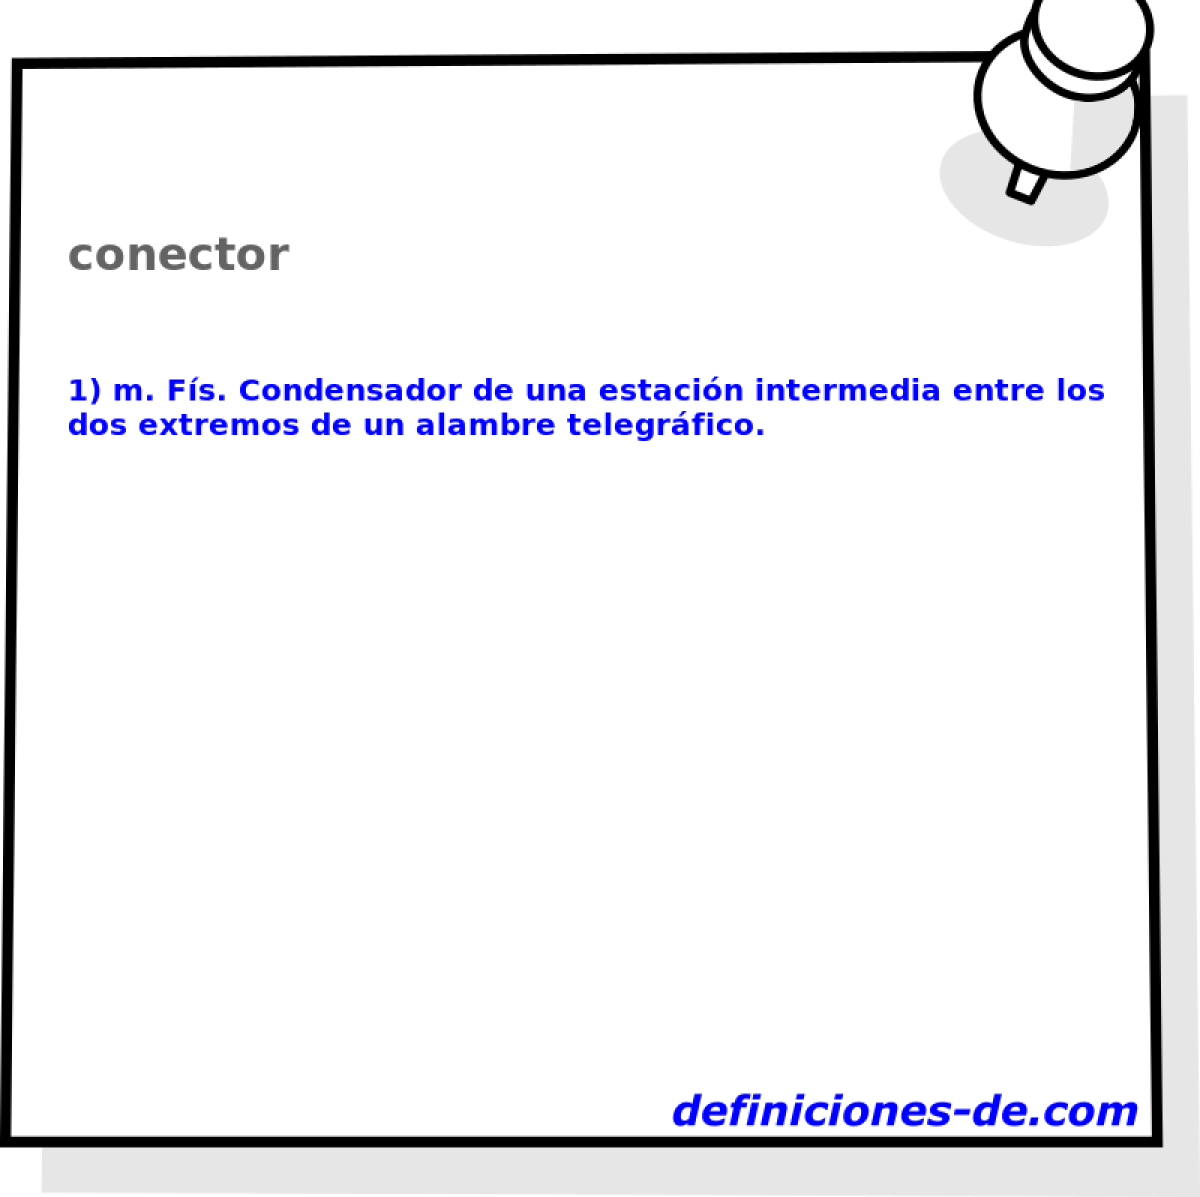 conector 